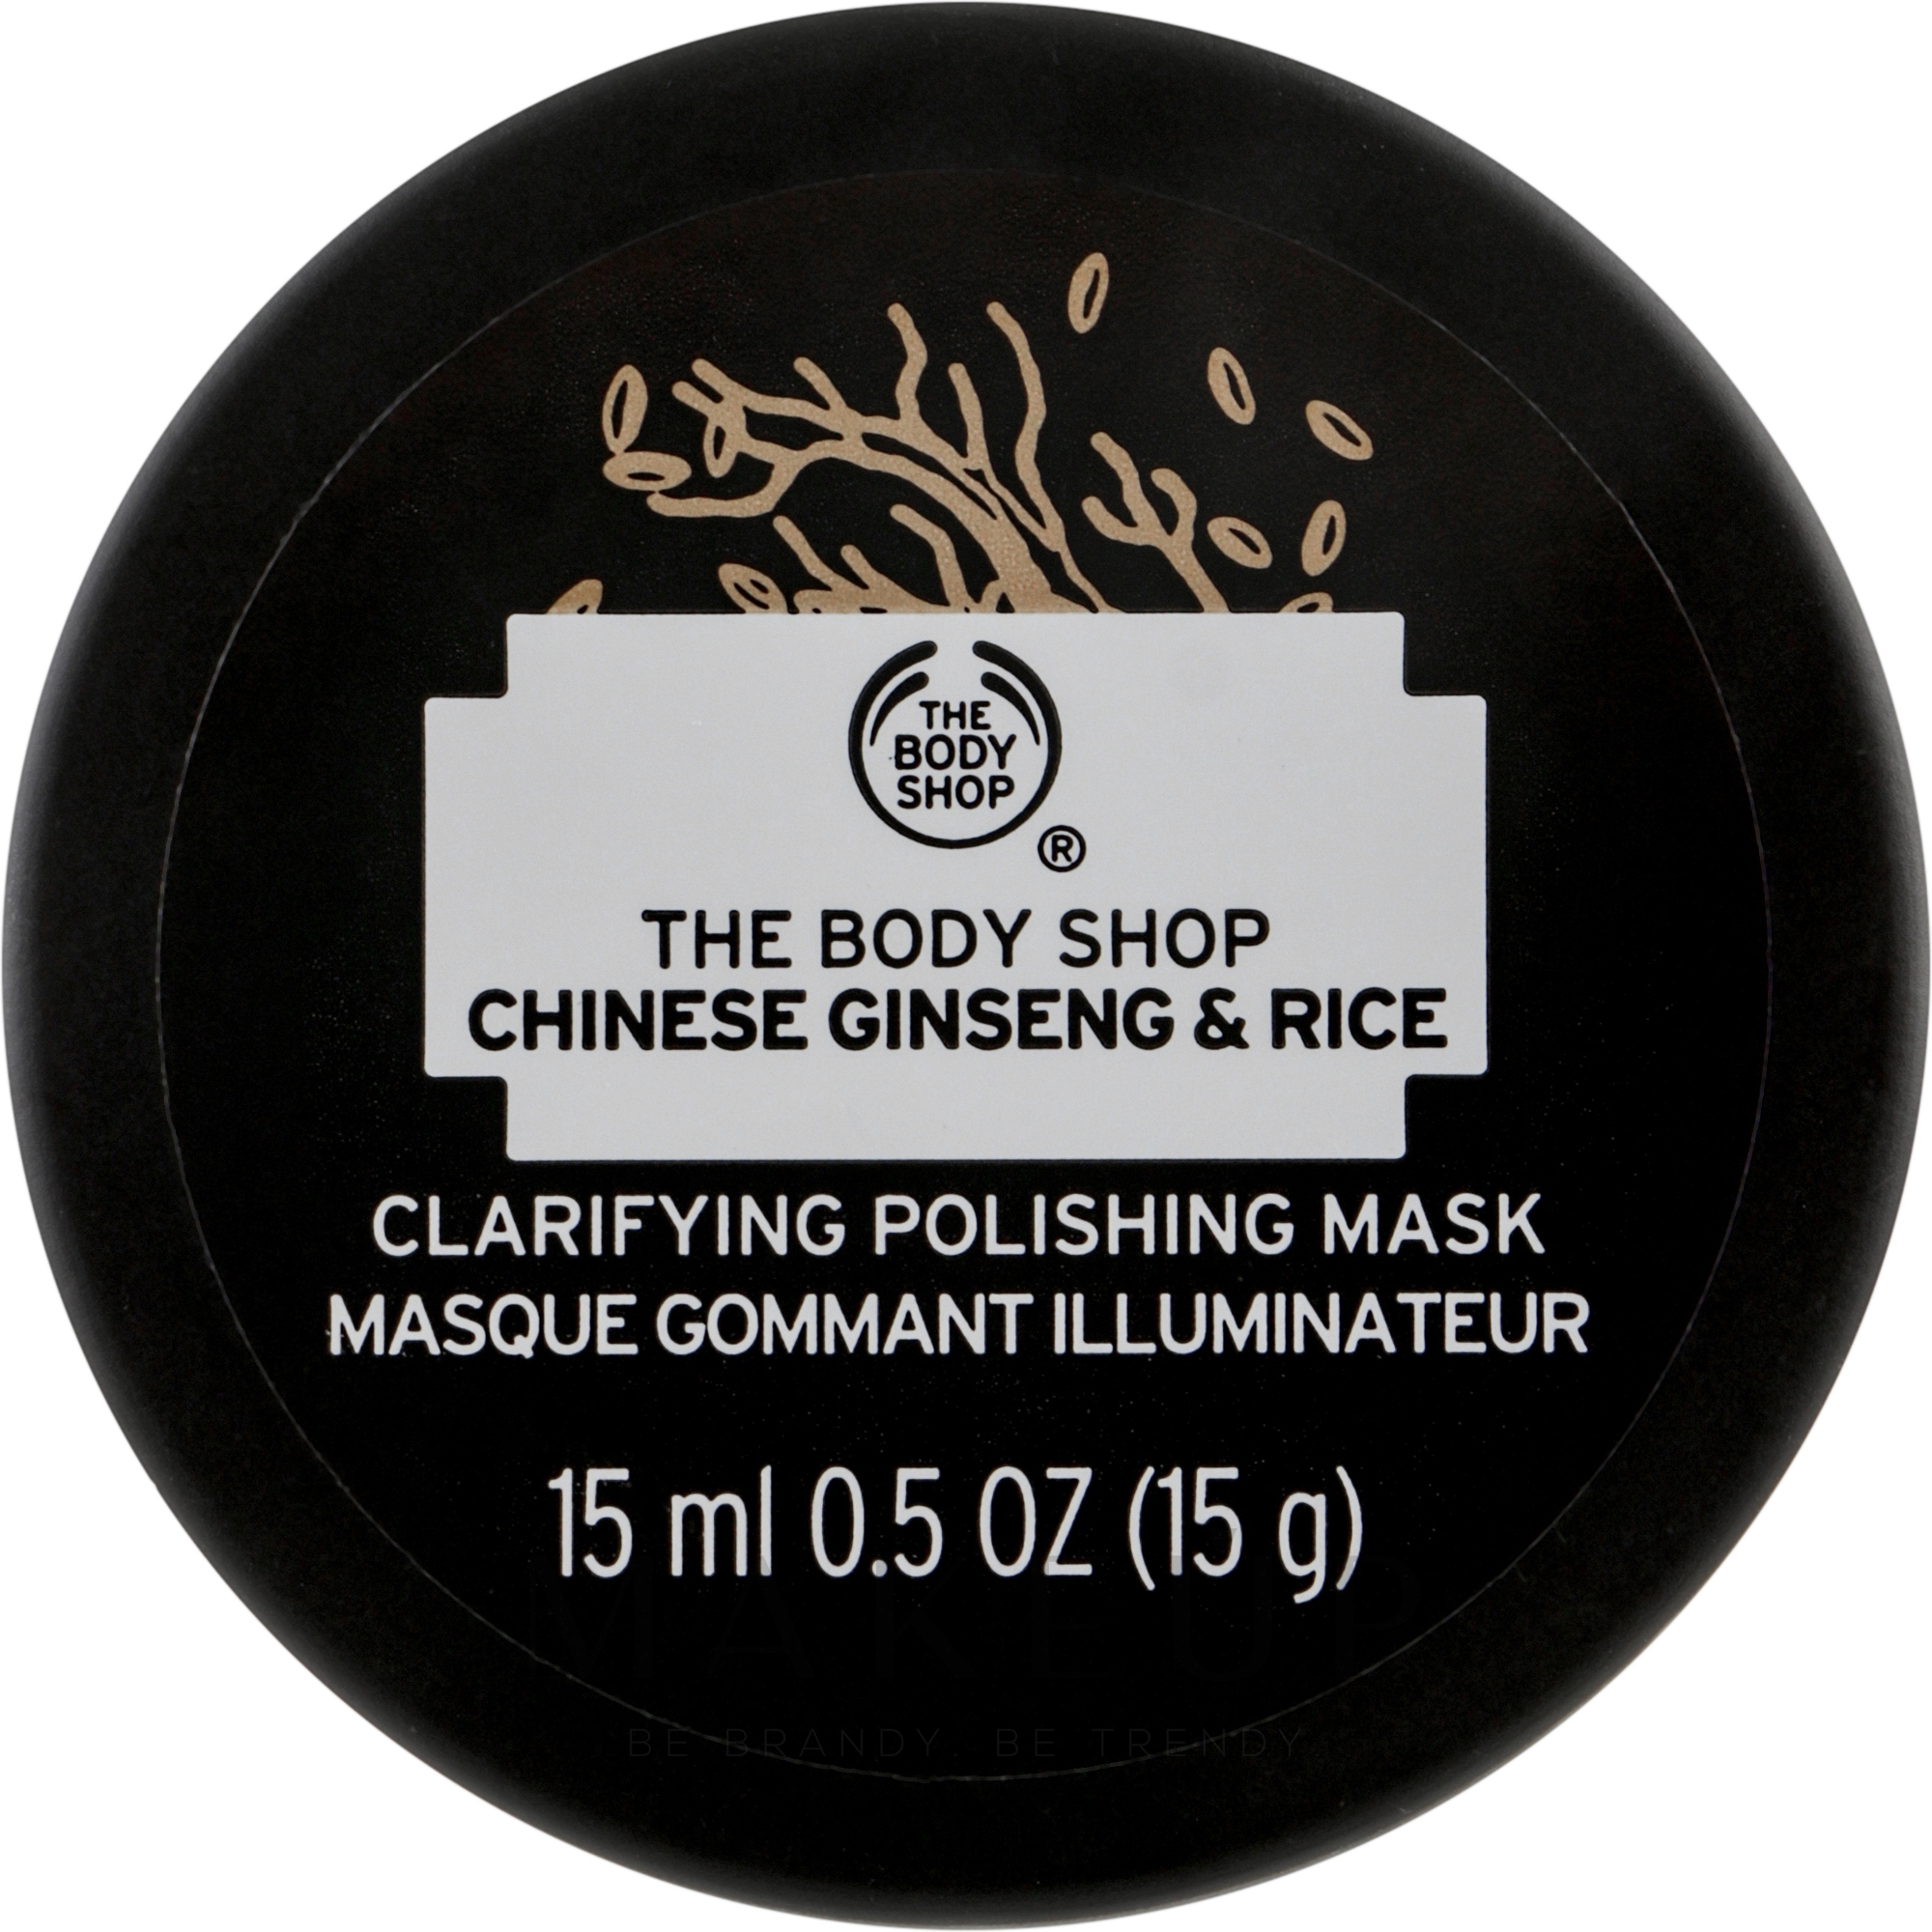 Reinigungsmaske für das Gesicht mit Ginseng und Reis - The Body Shop Chinese Ginseng & Rice Clarifying Polishing Mask (mini) — Bild 15 ml